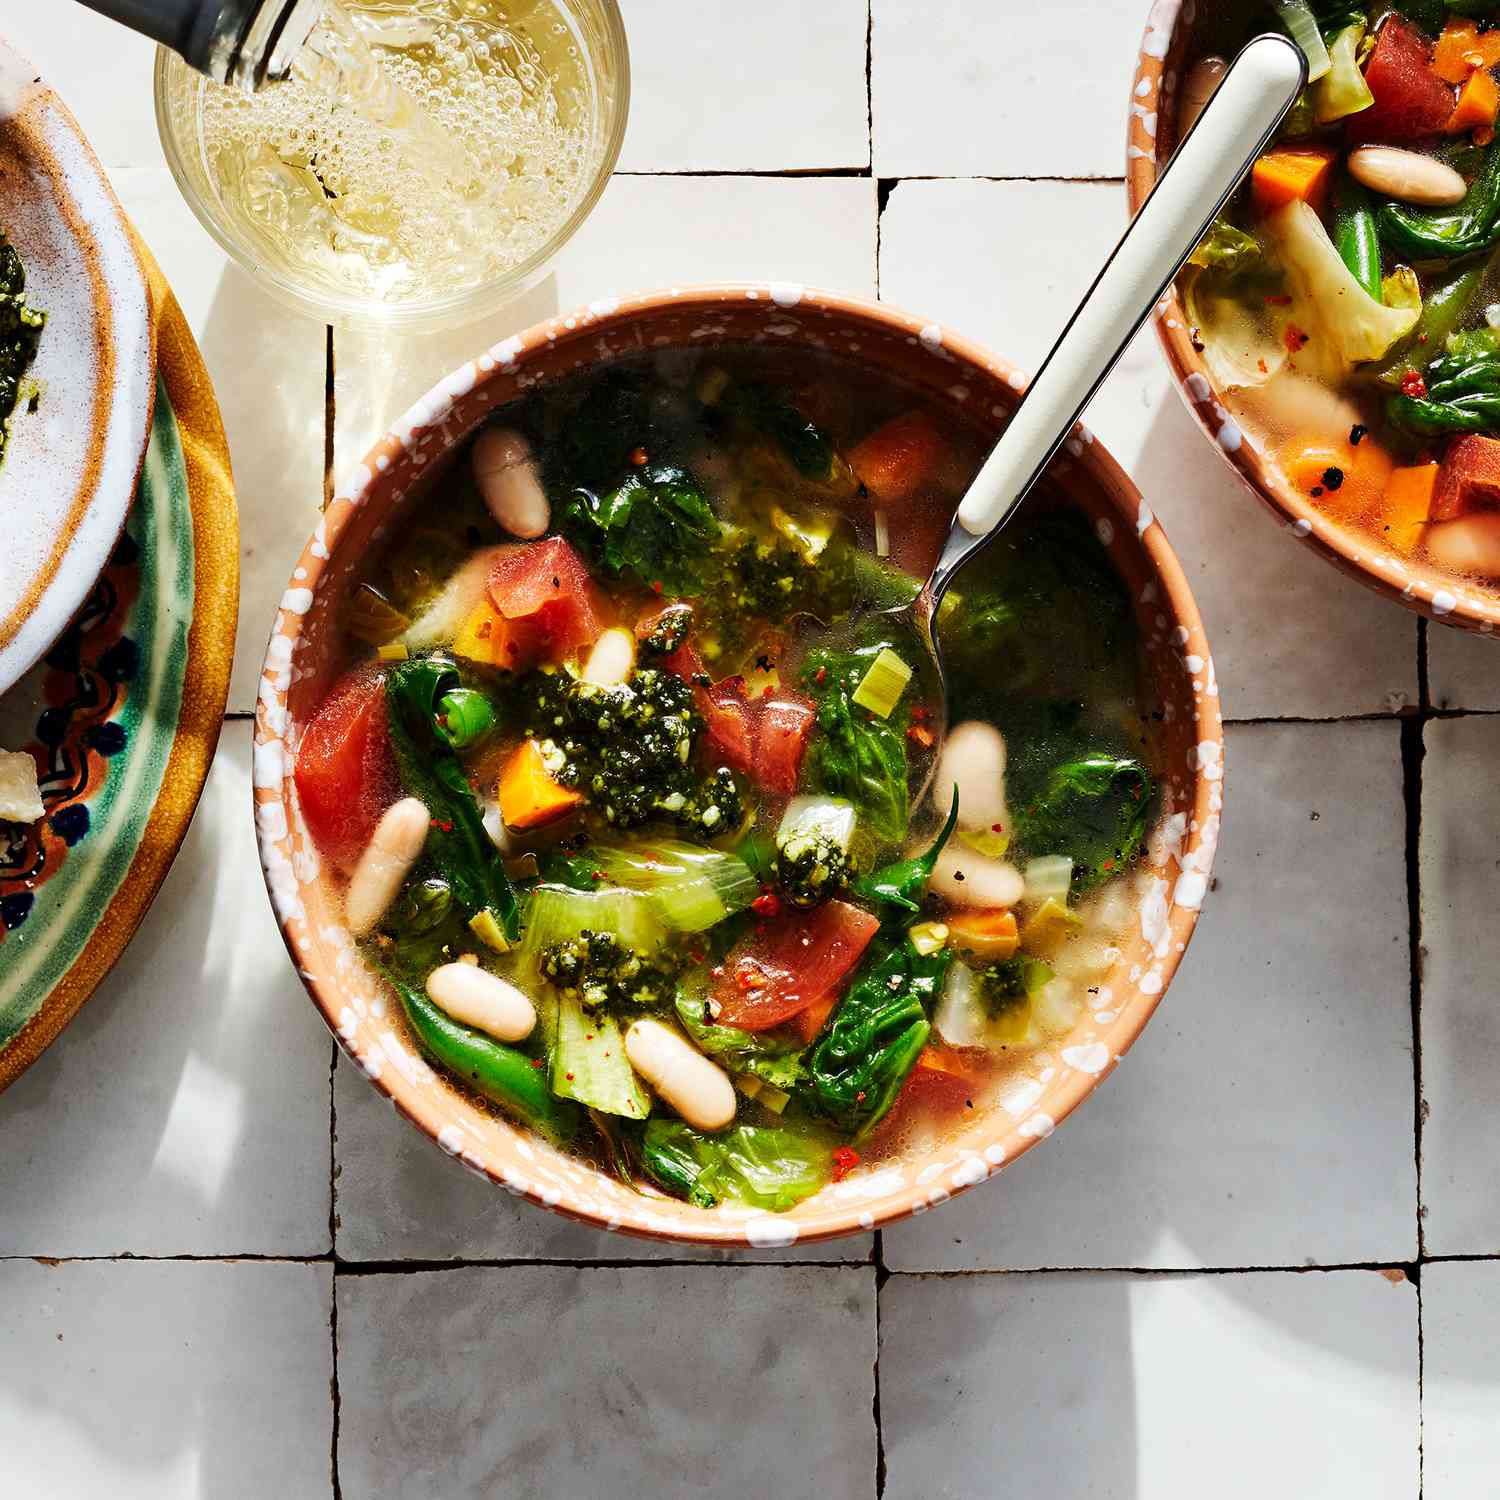 La receta simple de la sopa de los guisantes es de color elegante la mesa de primavera. Es perfecto para usar verduras congeladas cuando el mostrador de verduras es un paisaje asesino.